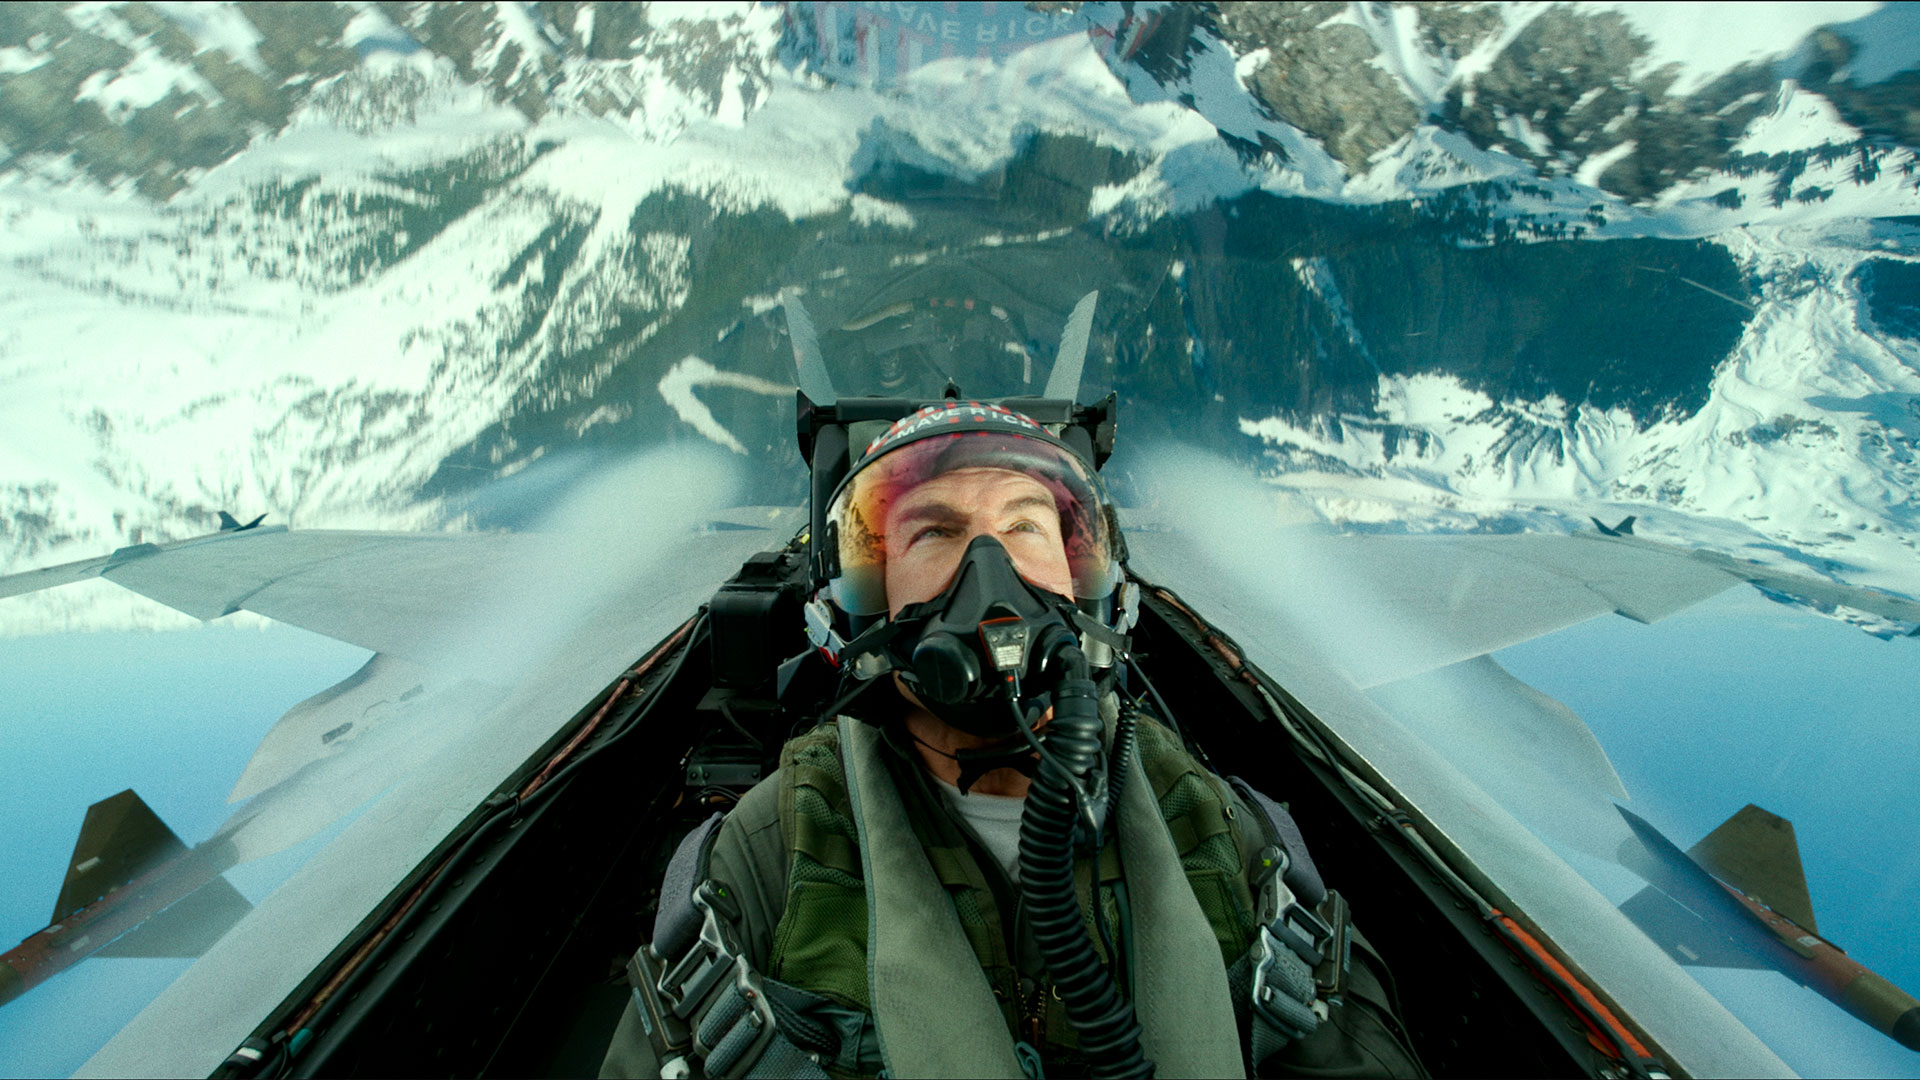 El aviador Maverick regresa en una nueva aventura para la ficción y deslumbra -otra vez- con escenas de combate en los aires. (Paramount Pictures)